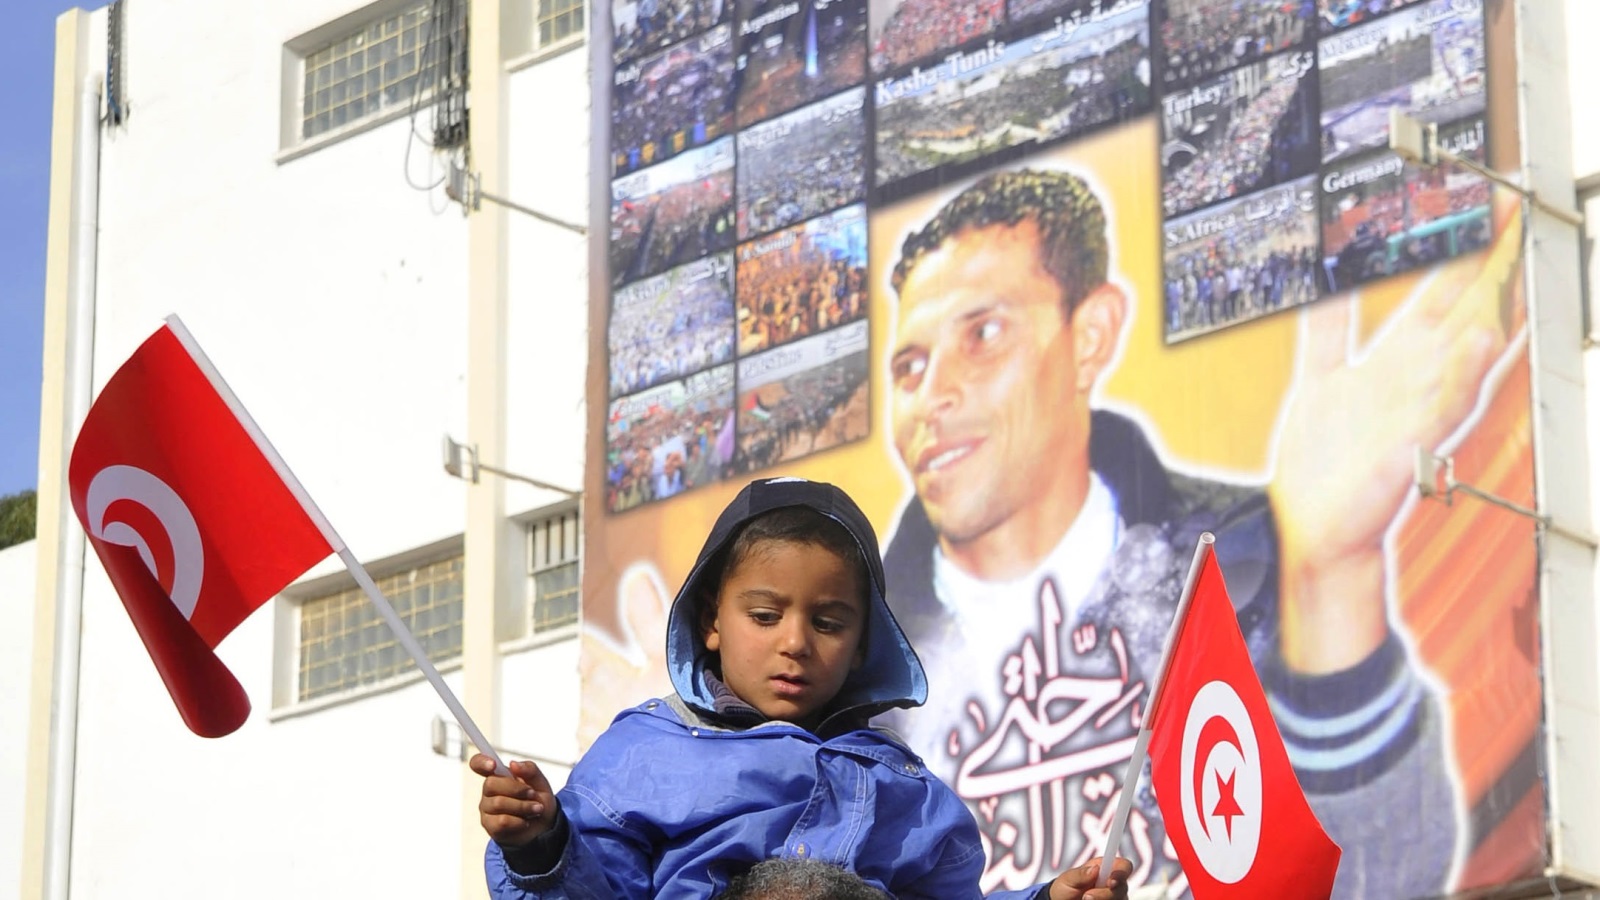 كما كانت شرارة بوعزيزي هي شرارة الربيع العربي الذي مازال مستمر، فعسى أن يكون الربيع العربي هو شرارة ثانية لأمور مستقبليه لتغيير الواقع وتكون هذه الثورات هي شرارة التغيير في مجتمعاتنا العربية والإسلامية